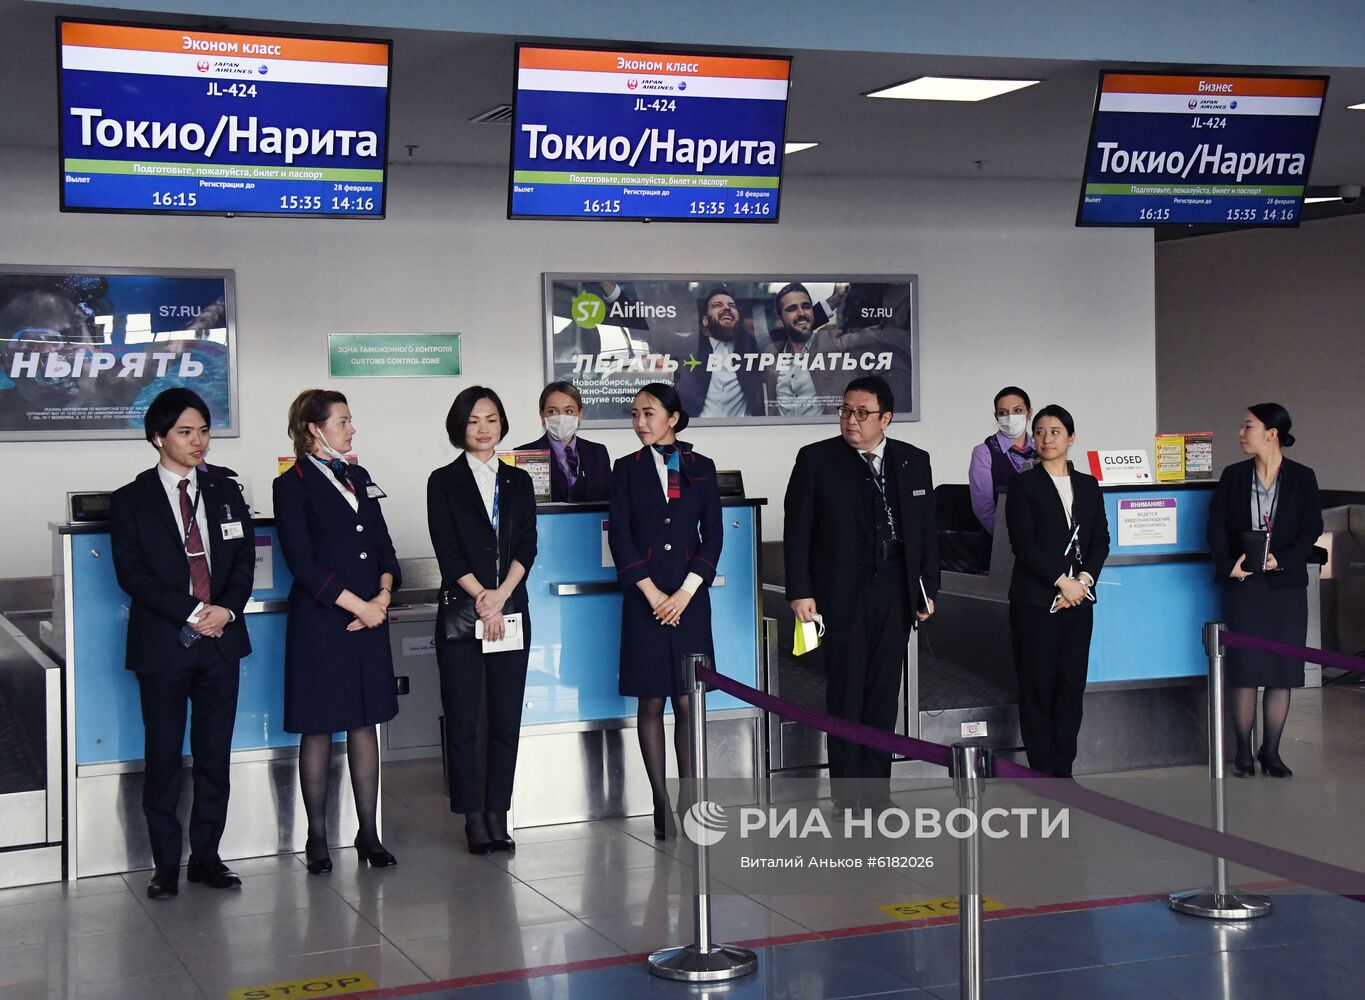 Японская авиакомпания JAL запустила прямые регулярные рейсы во Владивосток